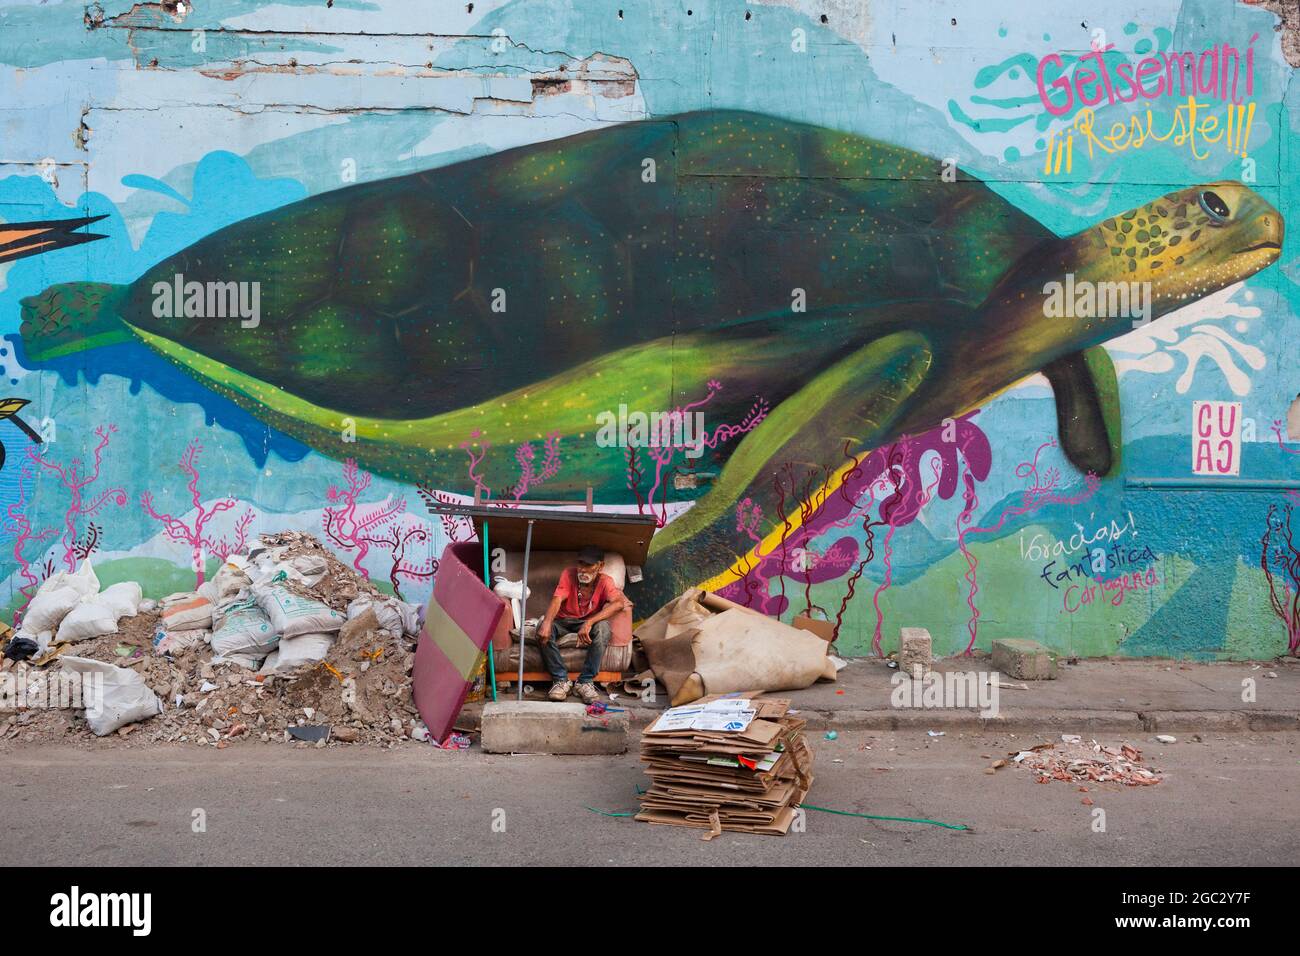 Un hombre sin hogar se sienta en un refugio de cartón improvisado junto a escombros de construcción y un mural gigante de una tortuga marina en Getsemani, Colombia. Foto de stock